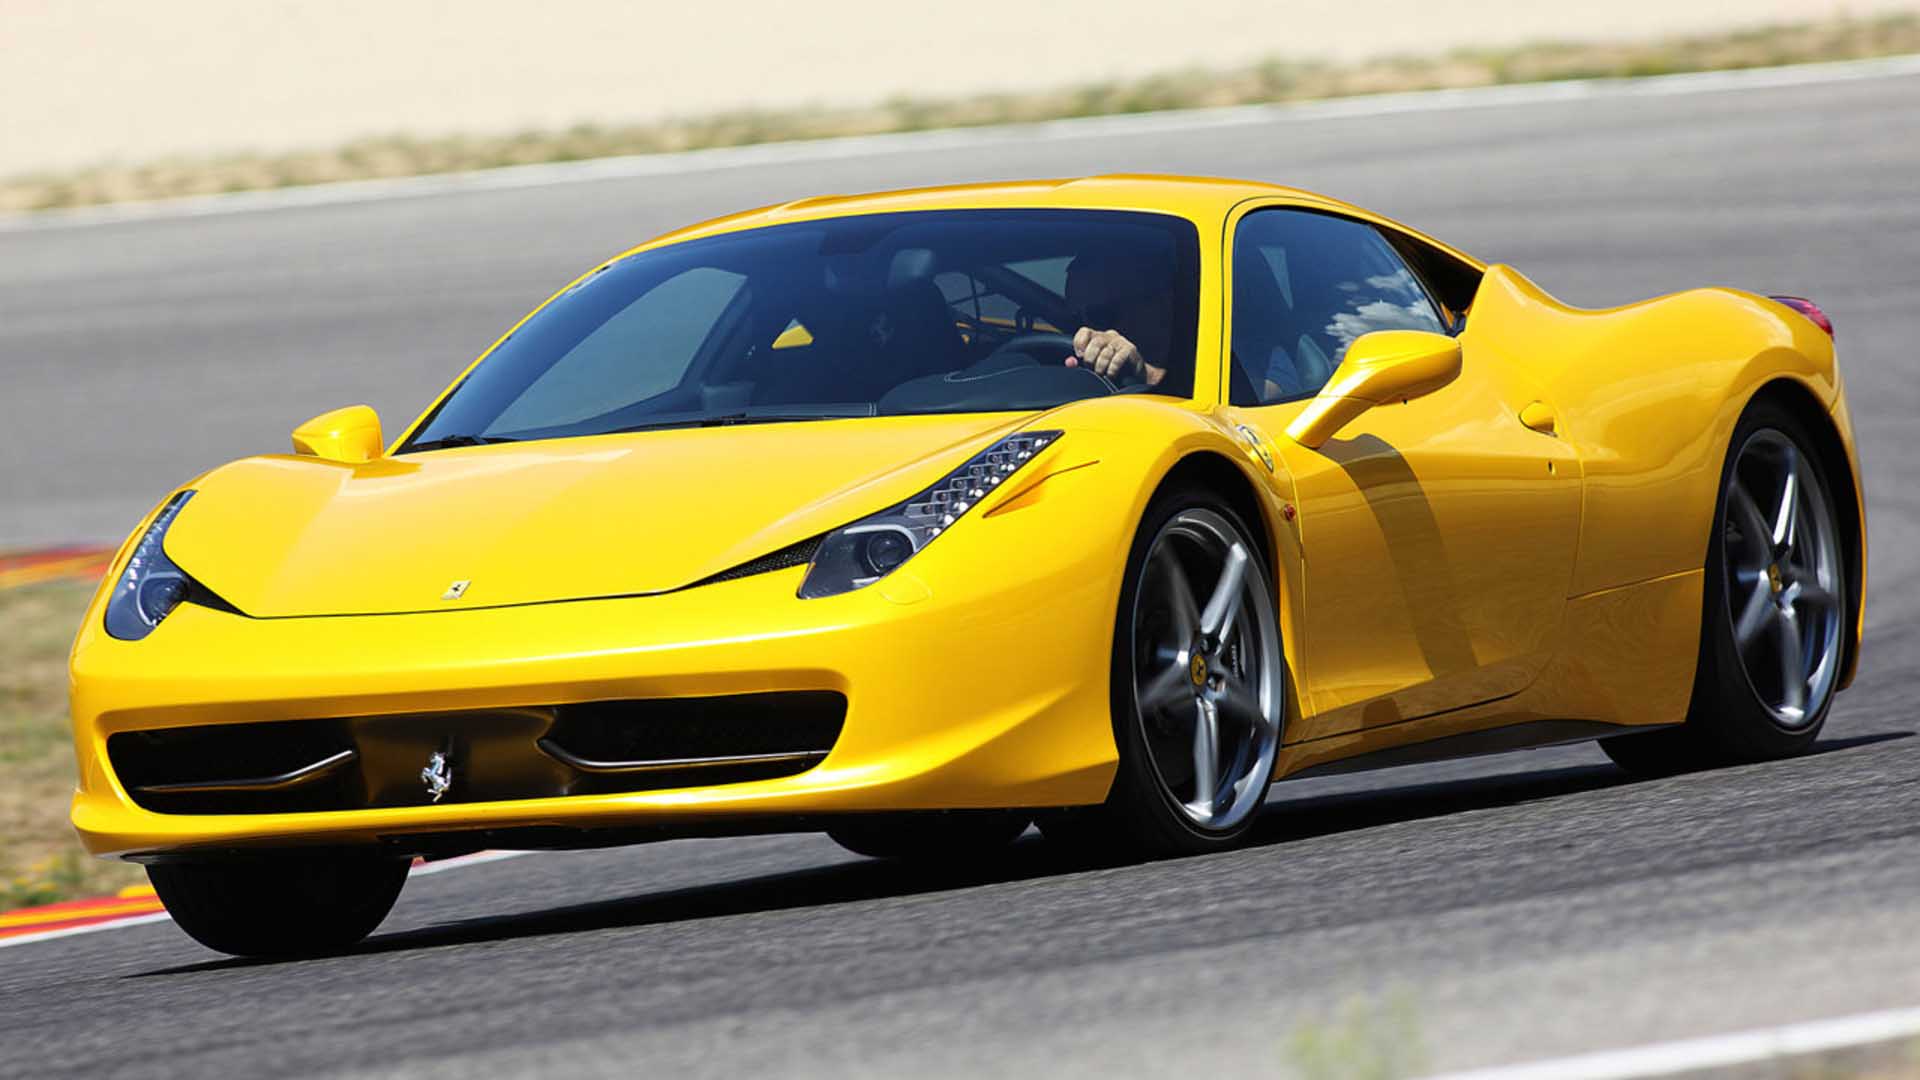 Best Top 20 Ferrari Wallpaper Gallery. - Original Preview - PIC ...